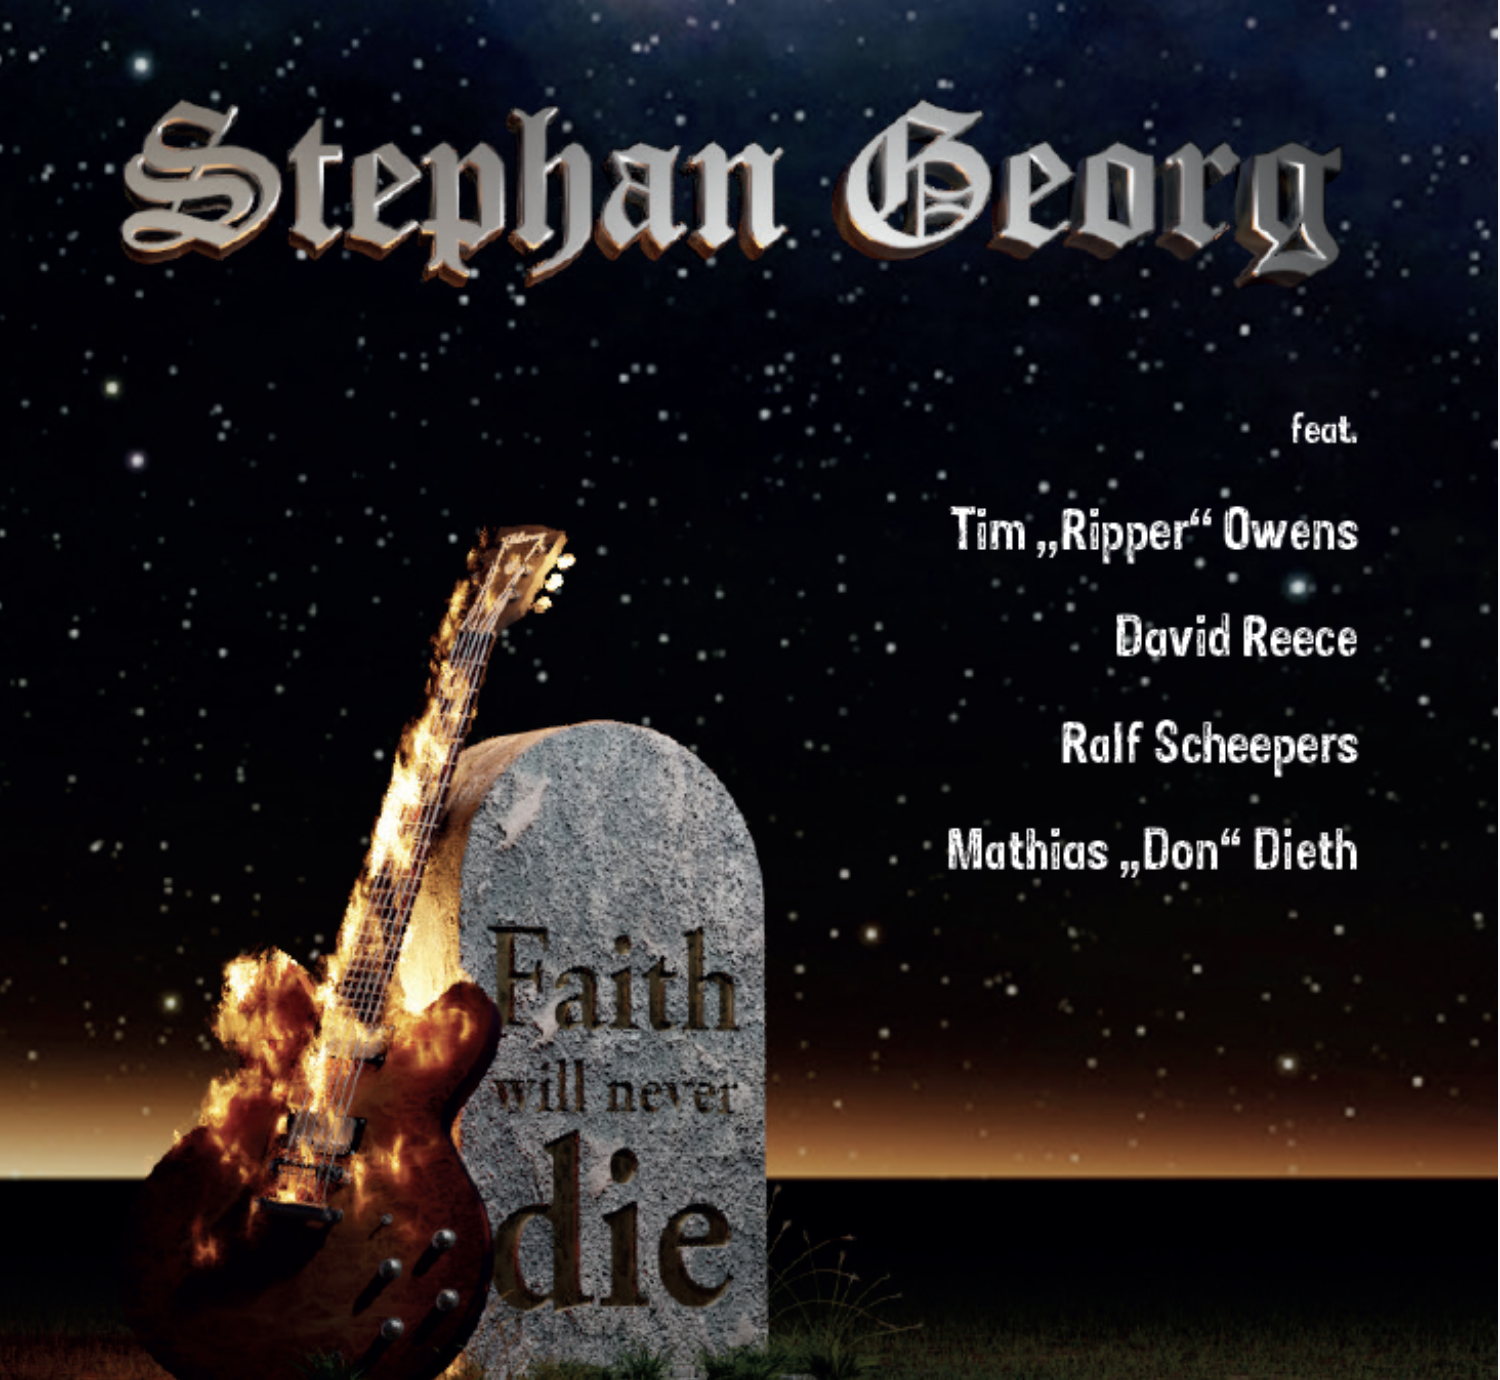 Stephan Georg - Faith will never die